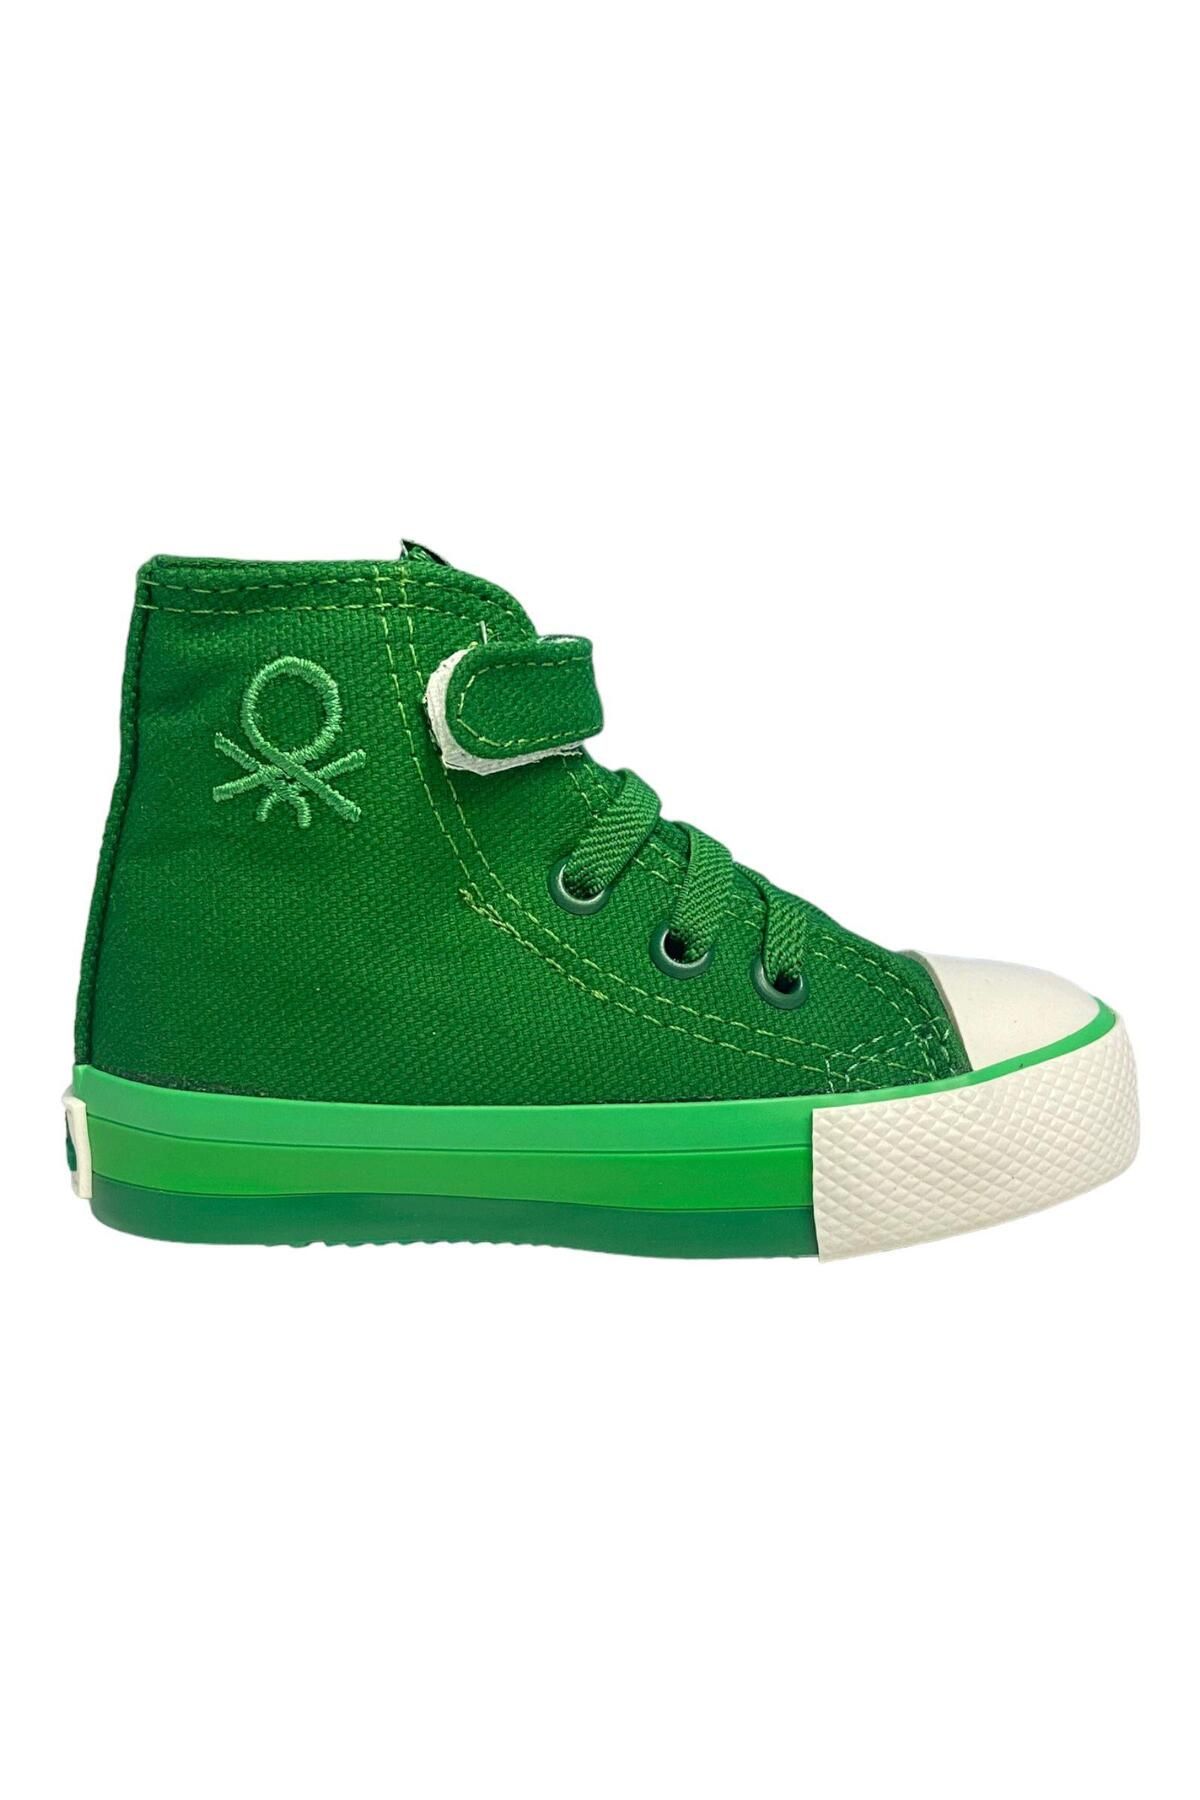 Benetton Bebe Yeşil Çocuk Spor Ayakkabı